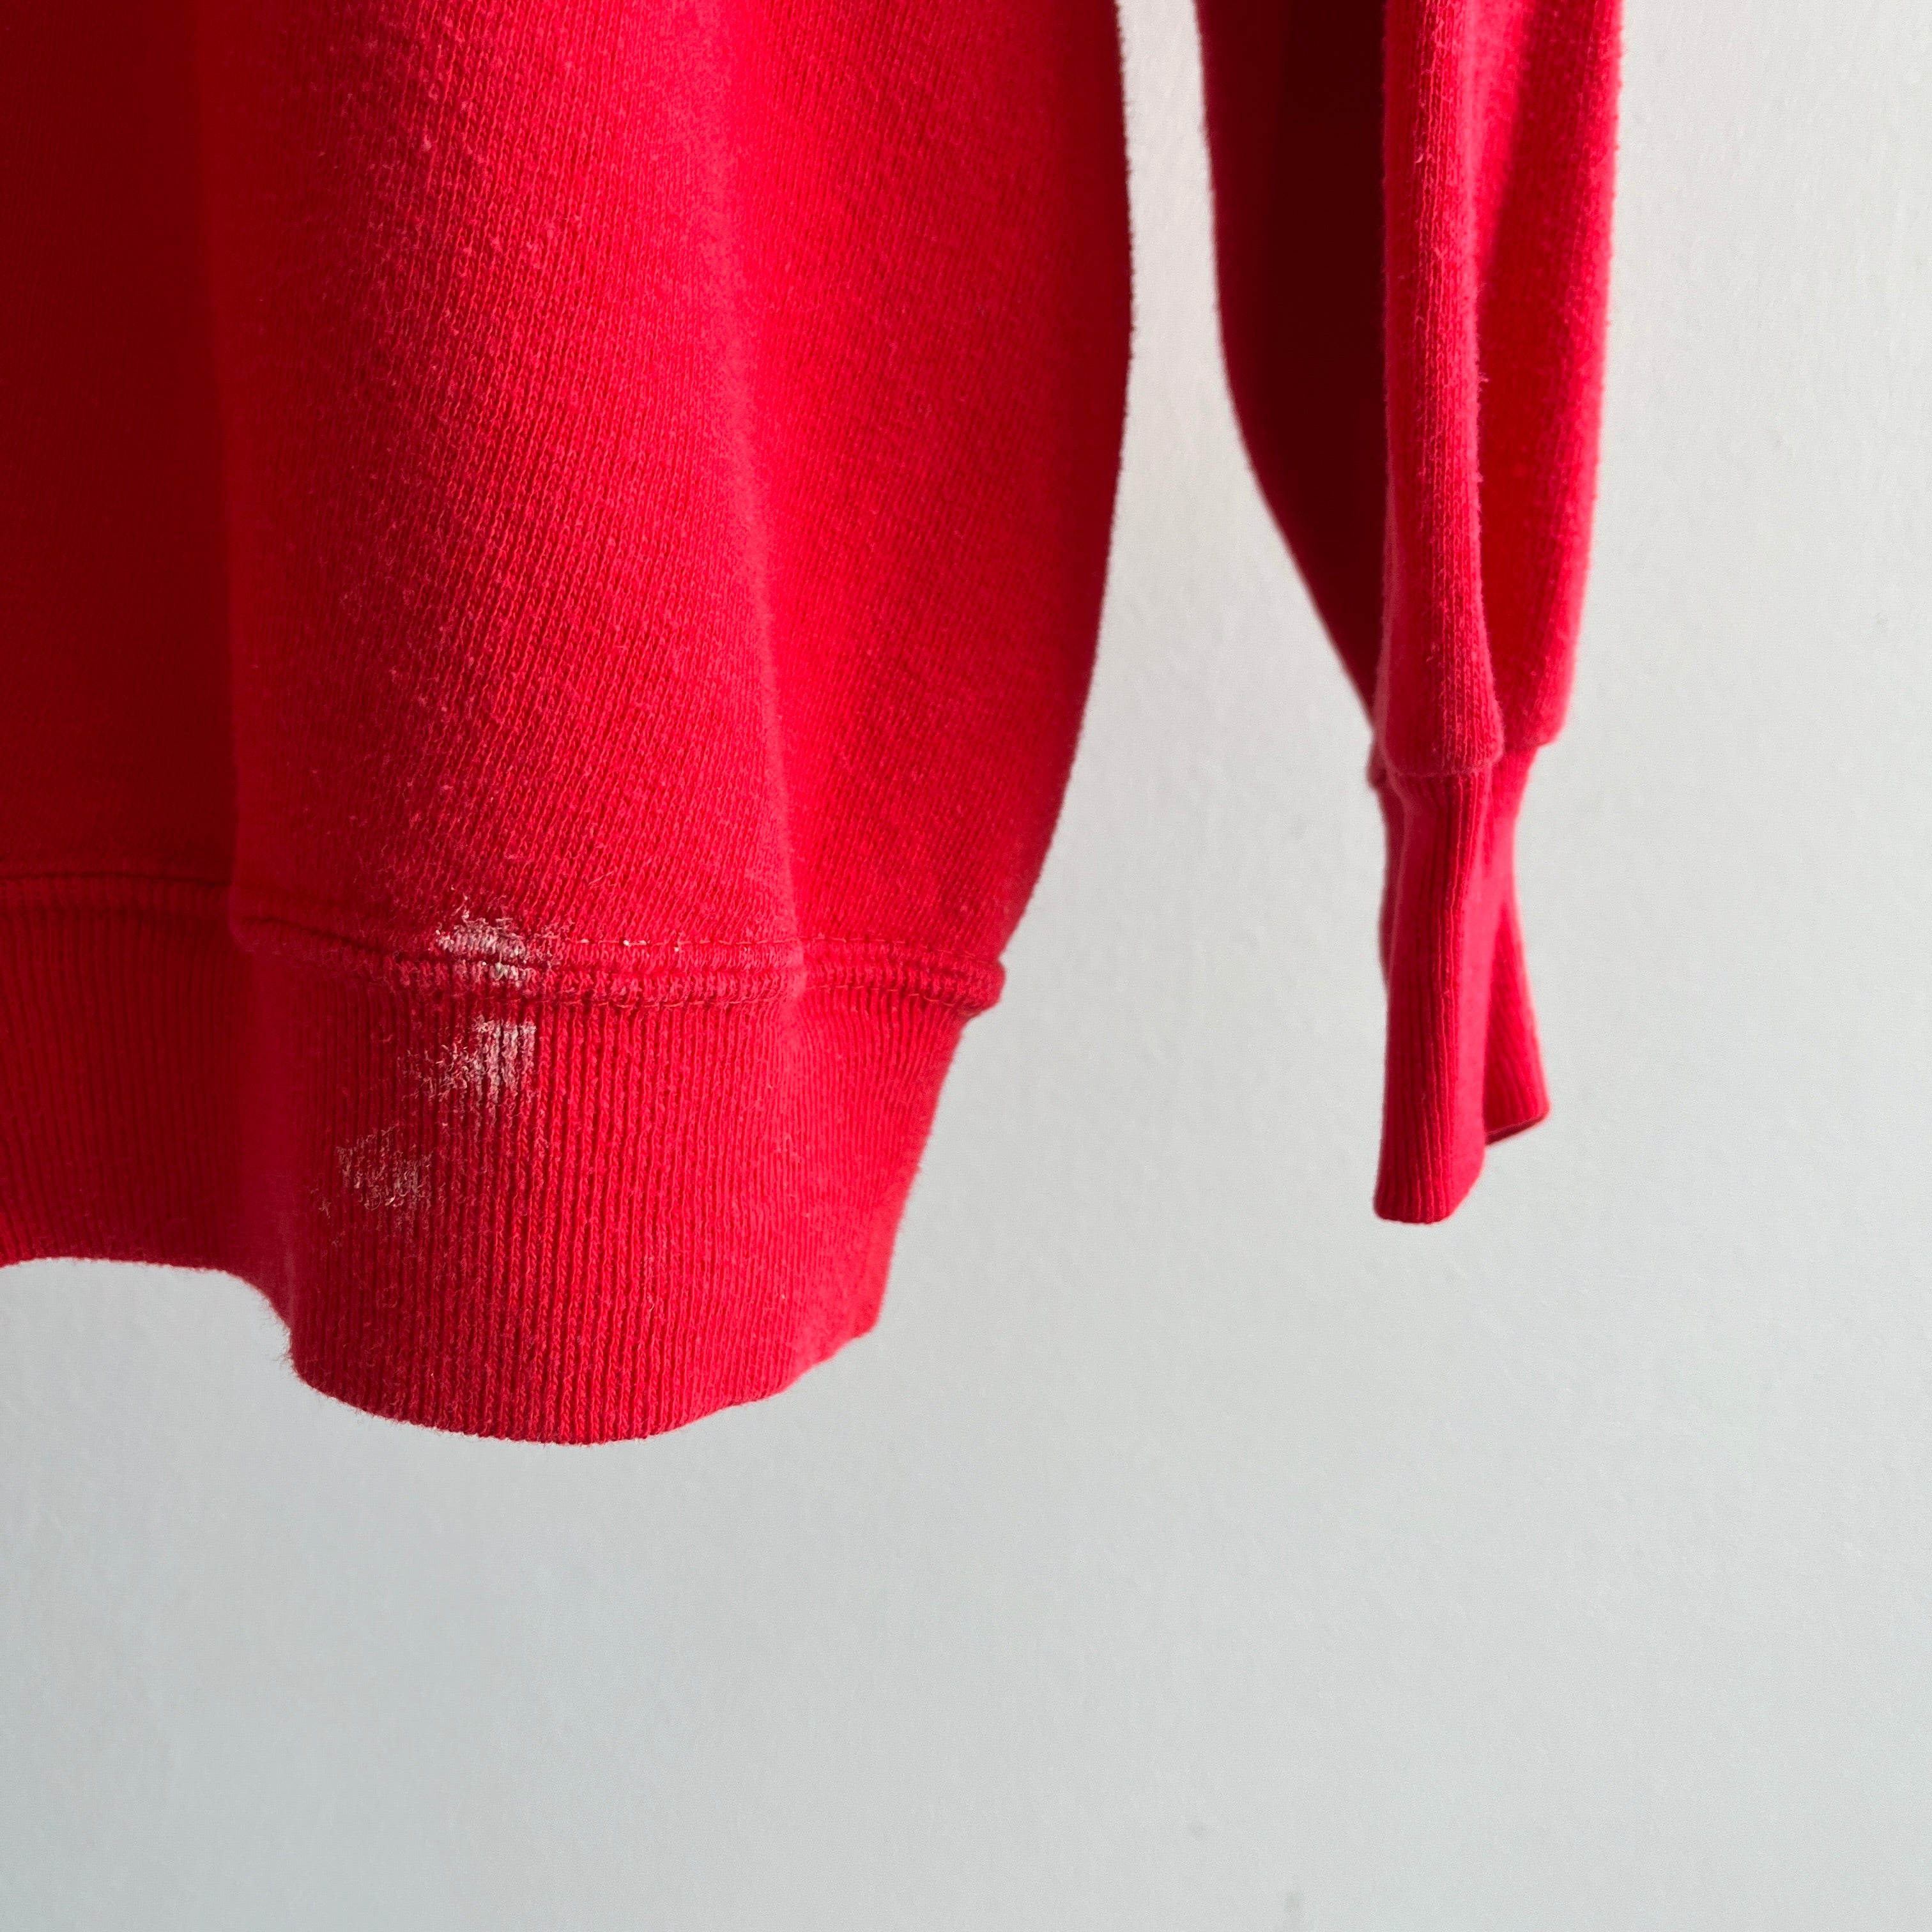 Sweat à capuche rouge vierge des années 1970/80 avec rayures contrastées blanches - oui !!!